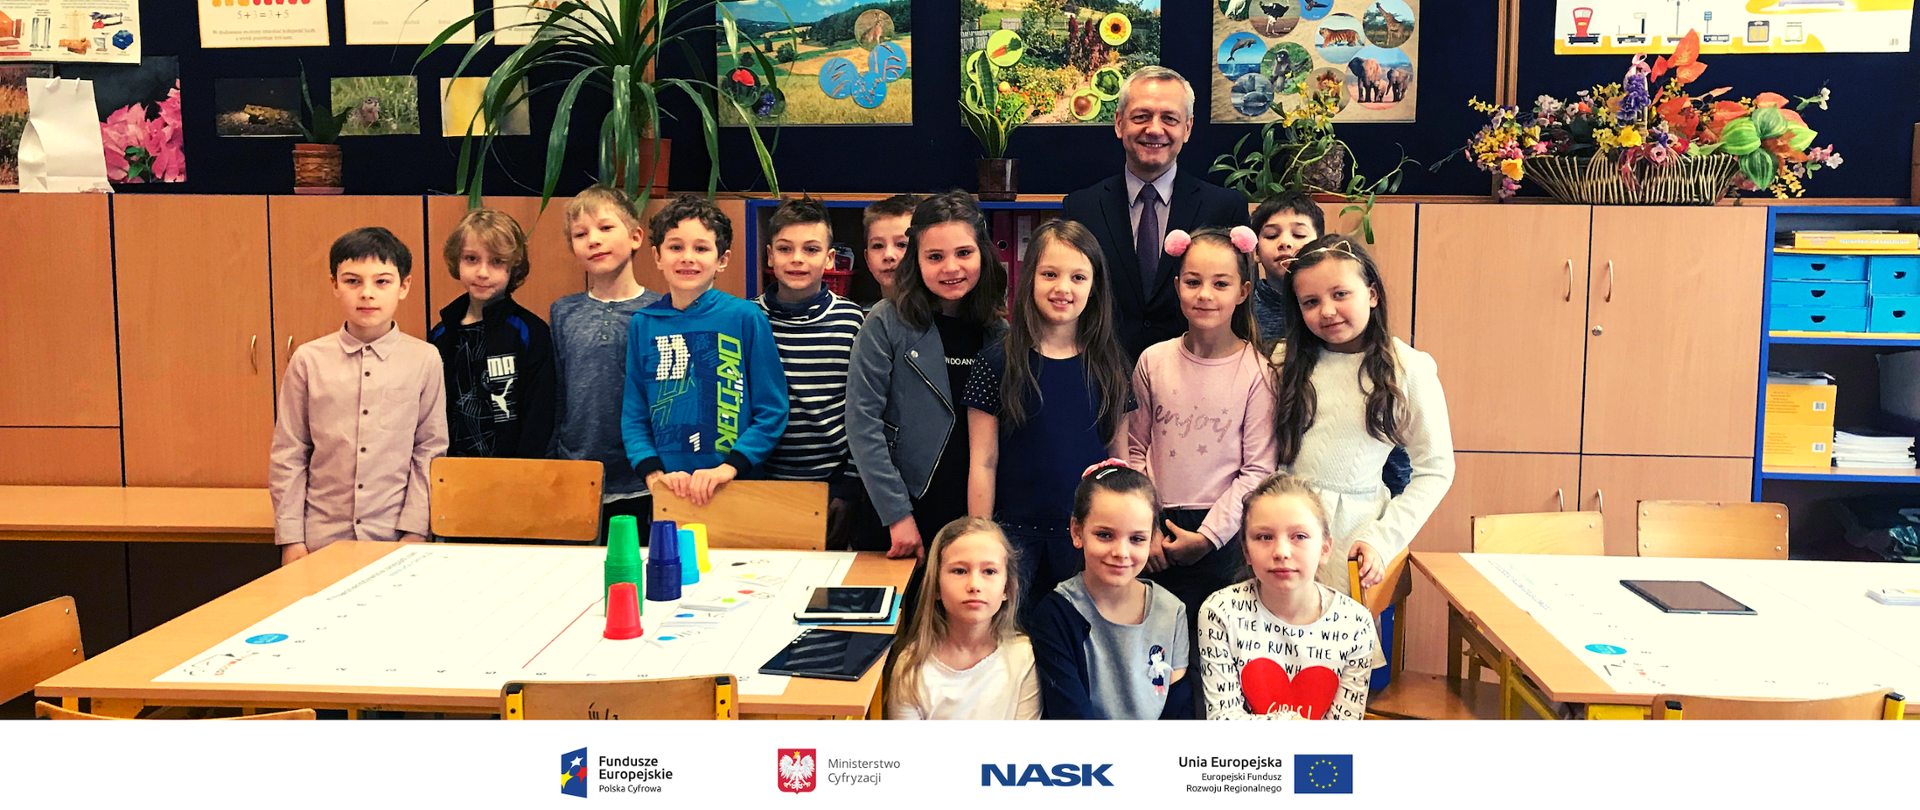 Na zdjęciu widać grupę dzieci z Ministrem Markiem Zagórskim w szkole. Na dole zdjęcia umieszczone są logotypy: Fundusze Europejskie. Polska Cyfrowa, Ministerstwo Cyfryzacji, NASK oraz Unia Europejska. Europejski Fundusz Rozwoju Regionalnego. 